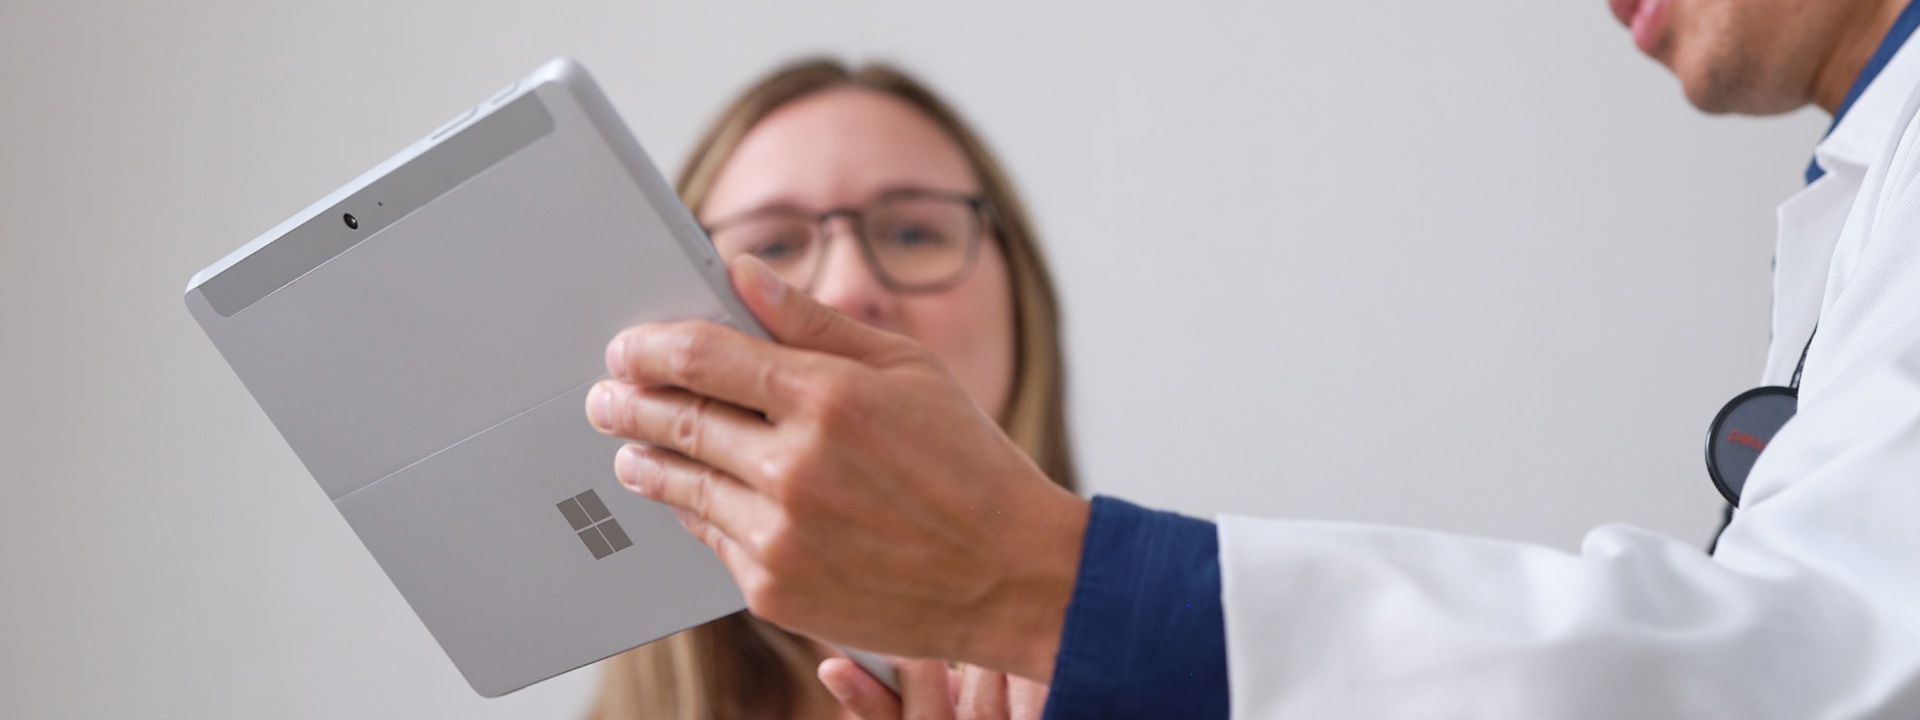 Egy orvos bemutatja egy betegnek a kezelési tervet egy Surface Pro készüléken